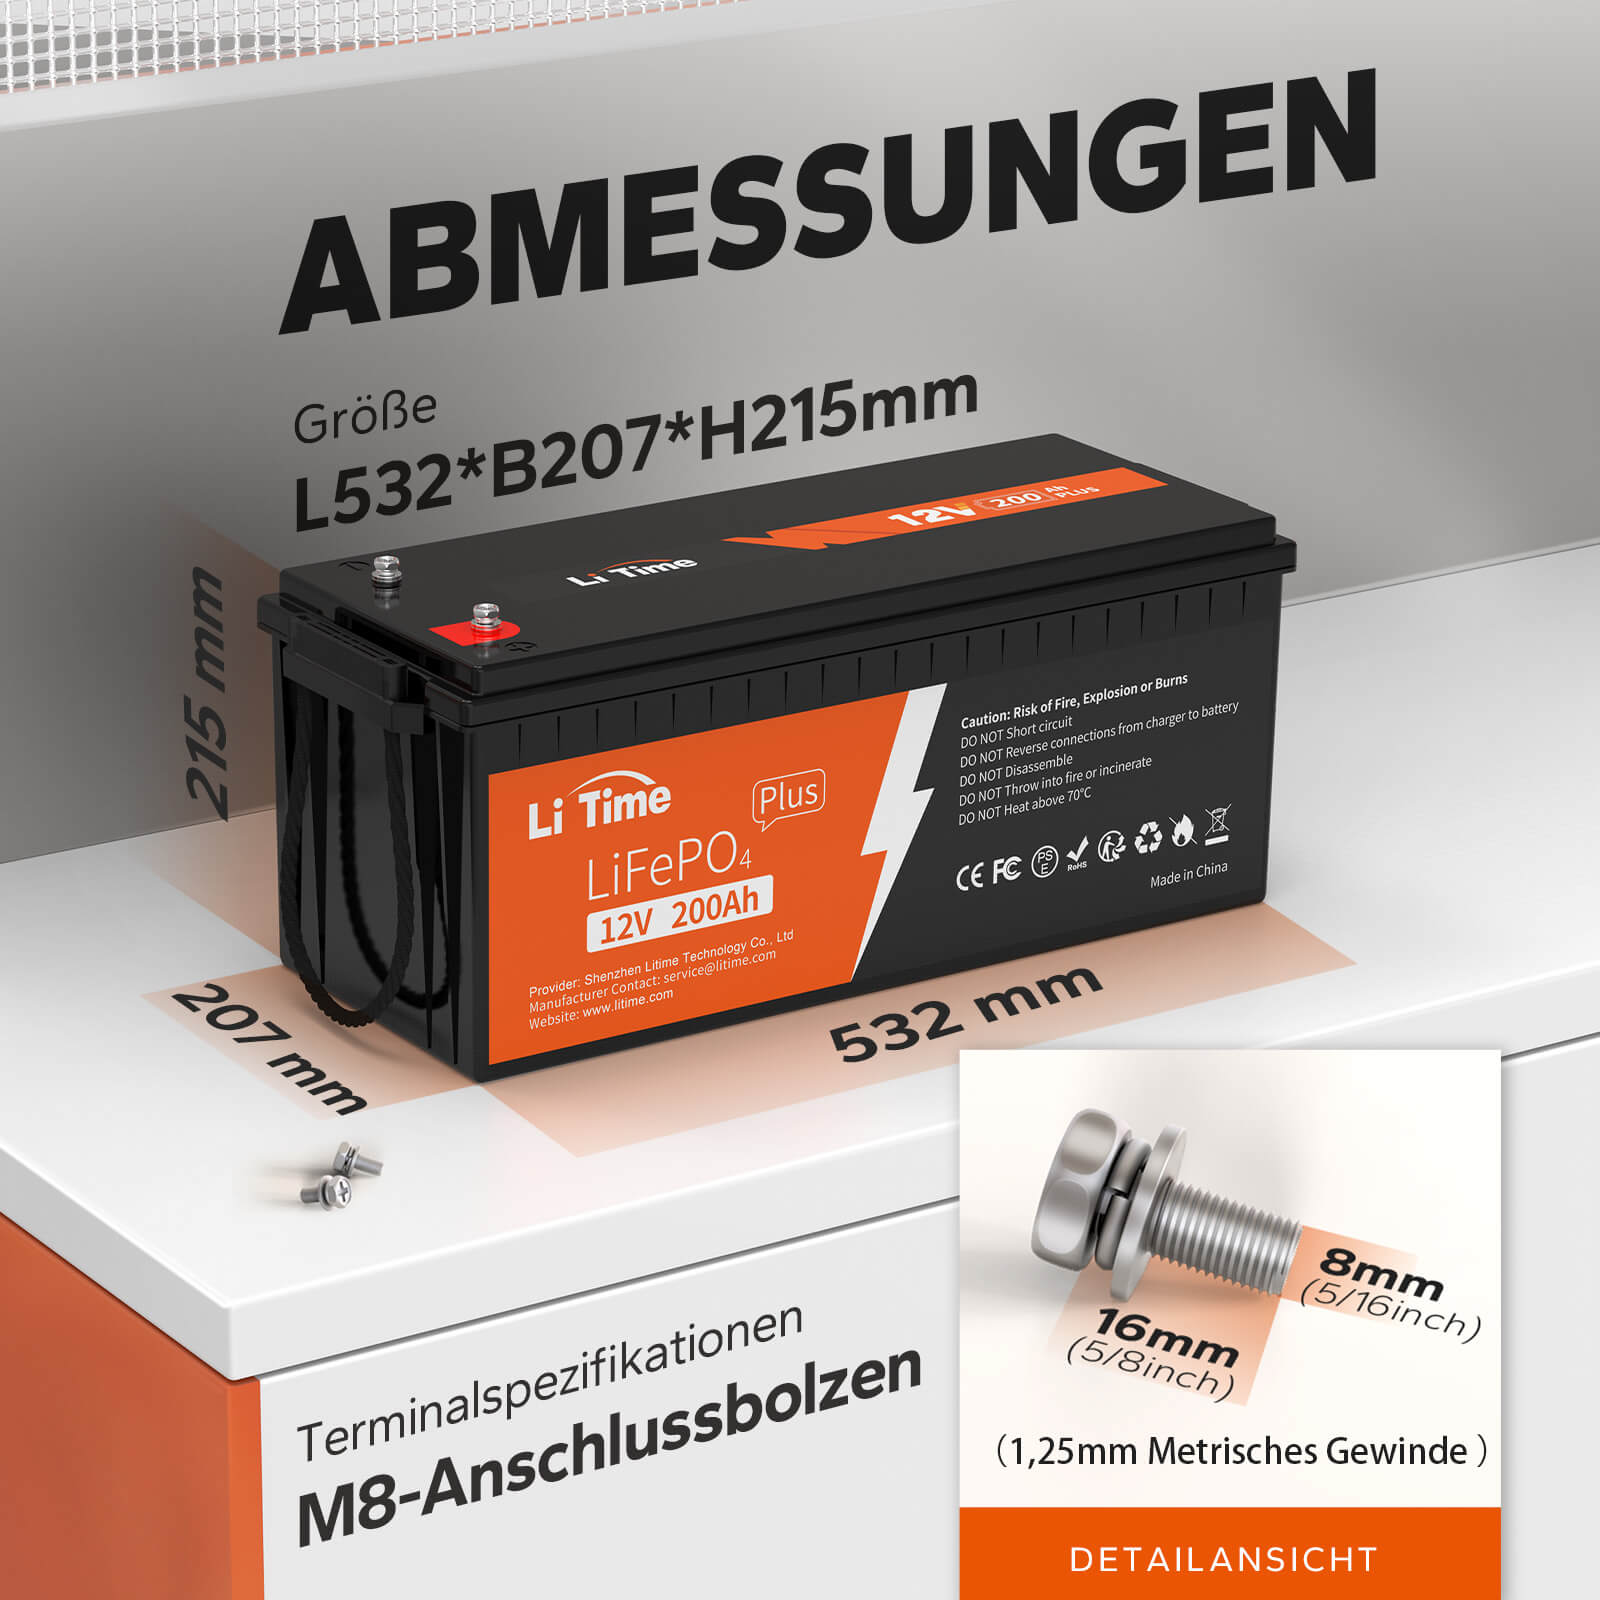 【0% TVA】Batterie LiTime 12V 200Ah Plus Lithium LiFePO4 (UNIQUEMENT pour les bâtiments résidentiels et UNIQUEMENT en DEU - Uniquement pour les clients en Allemagne)